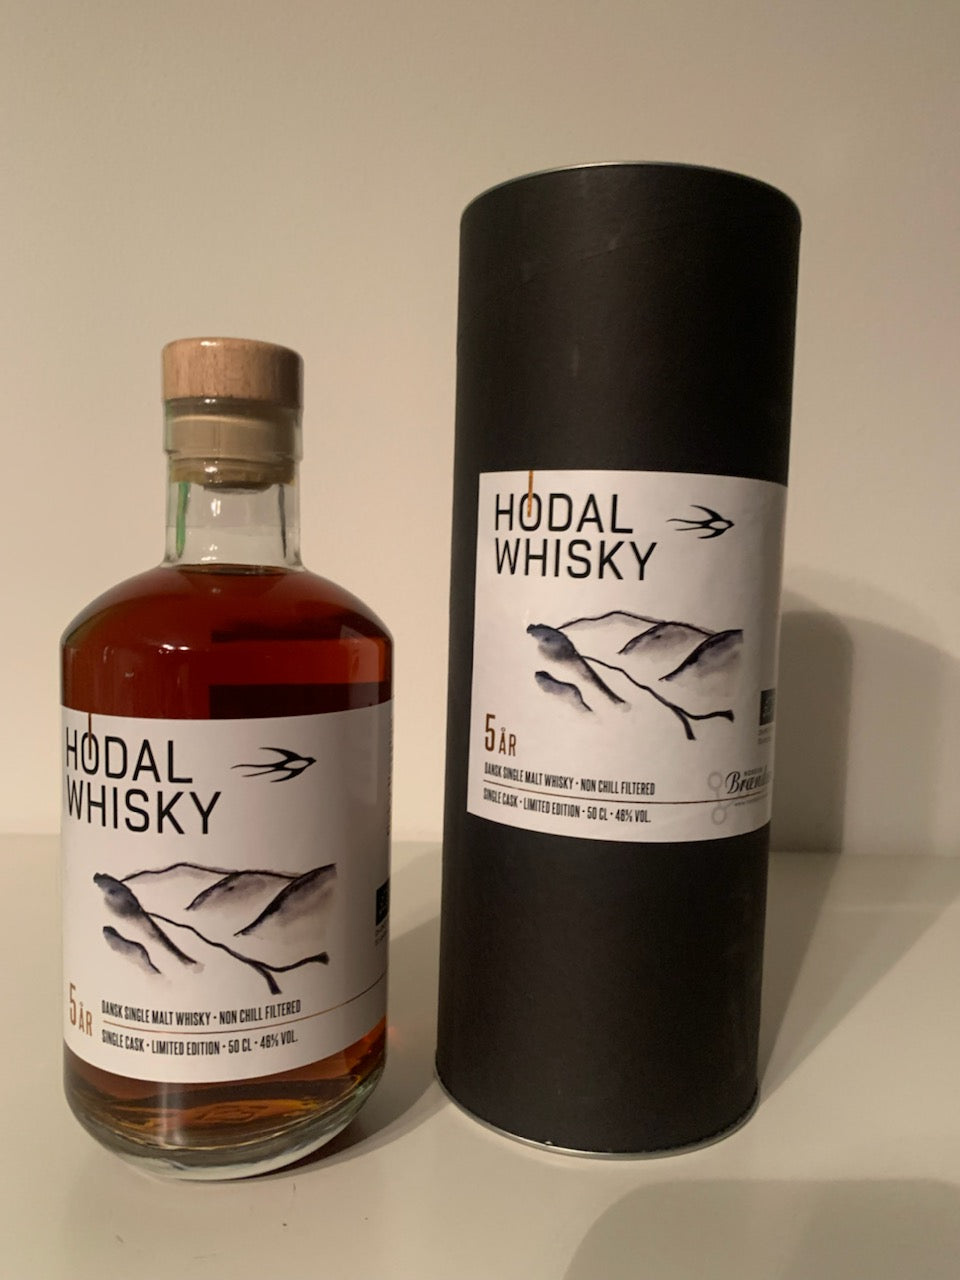 Hødal Whisky No. 5 Oaky Passion 46% / 50 CL.